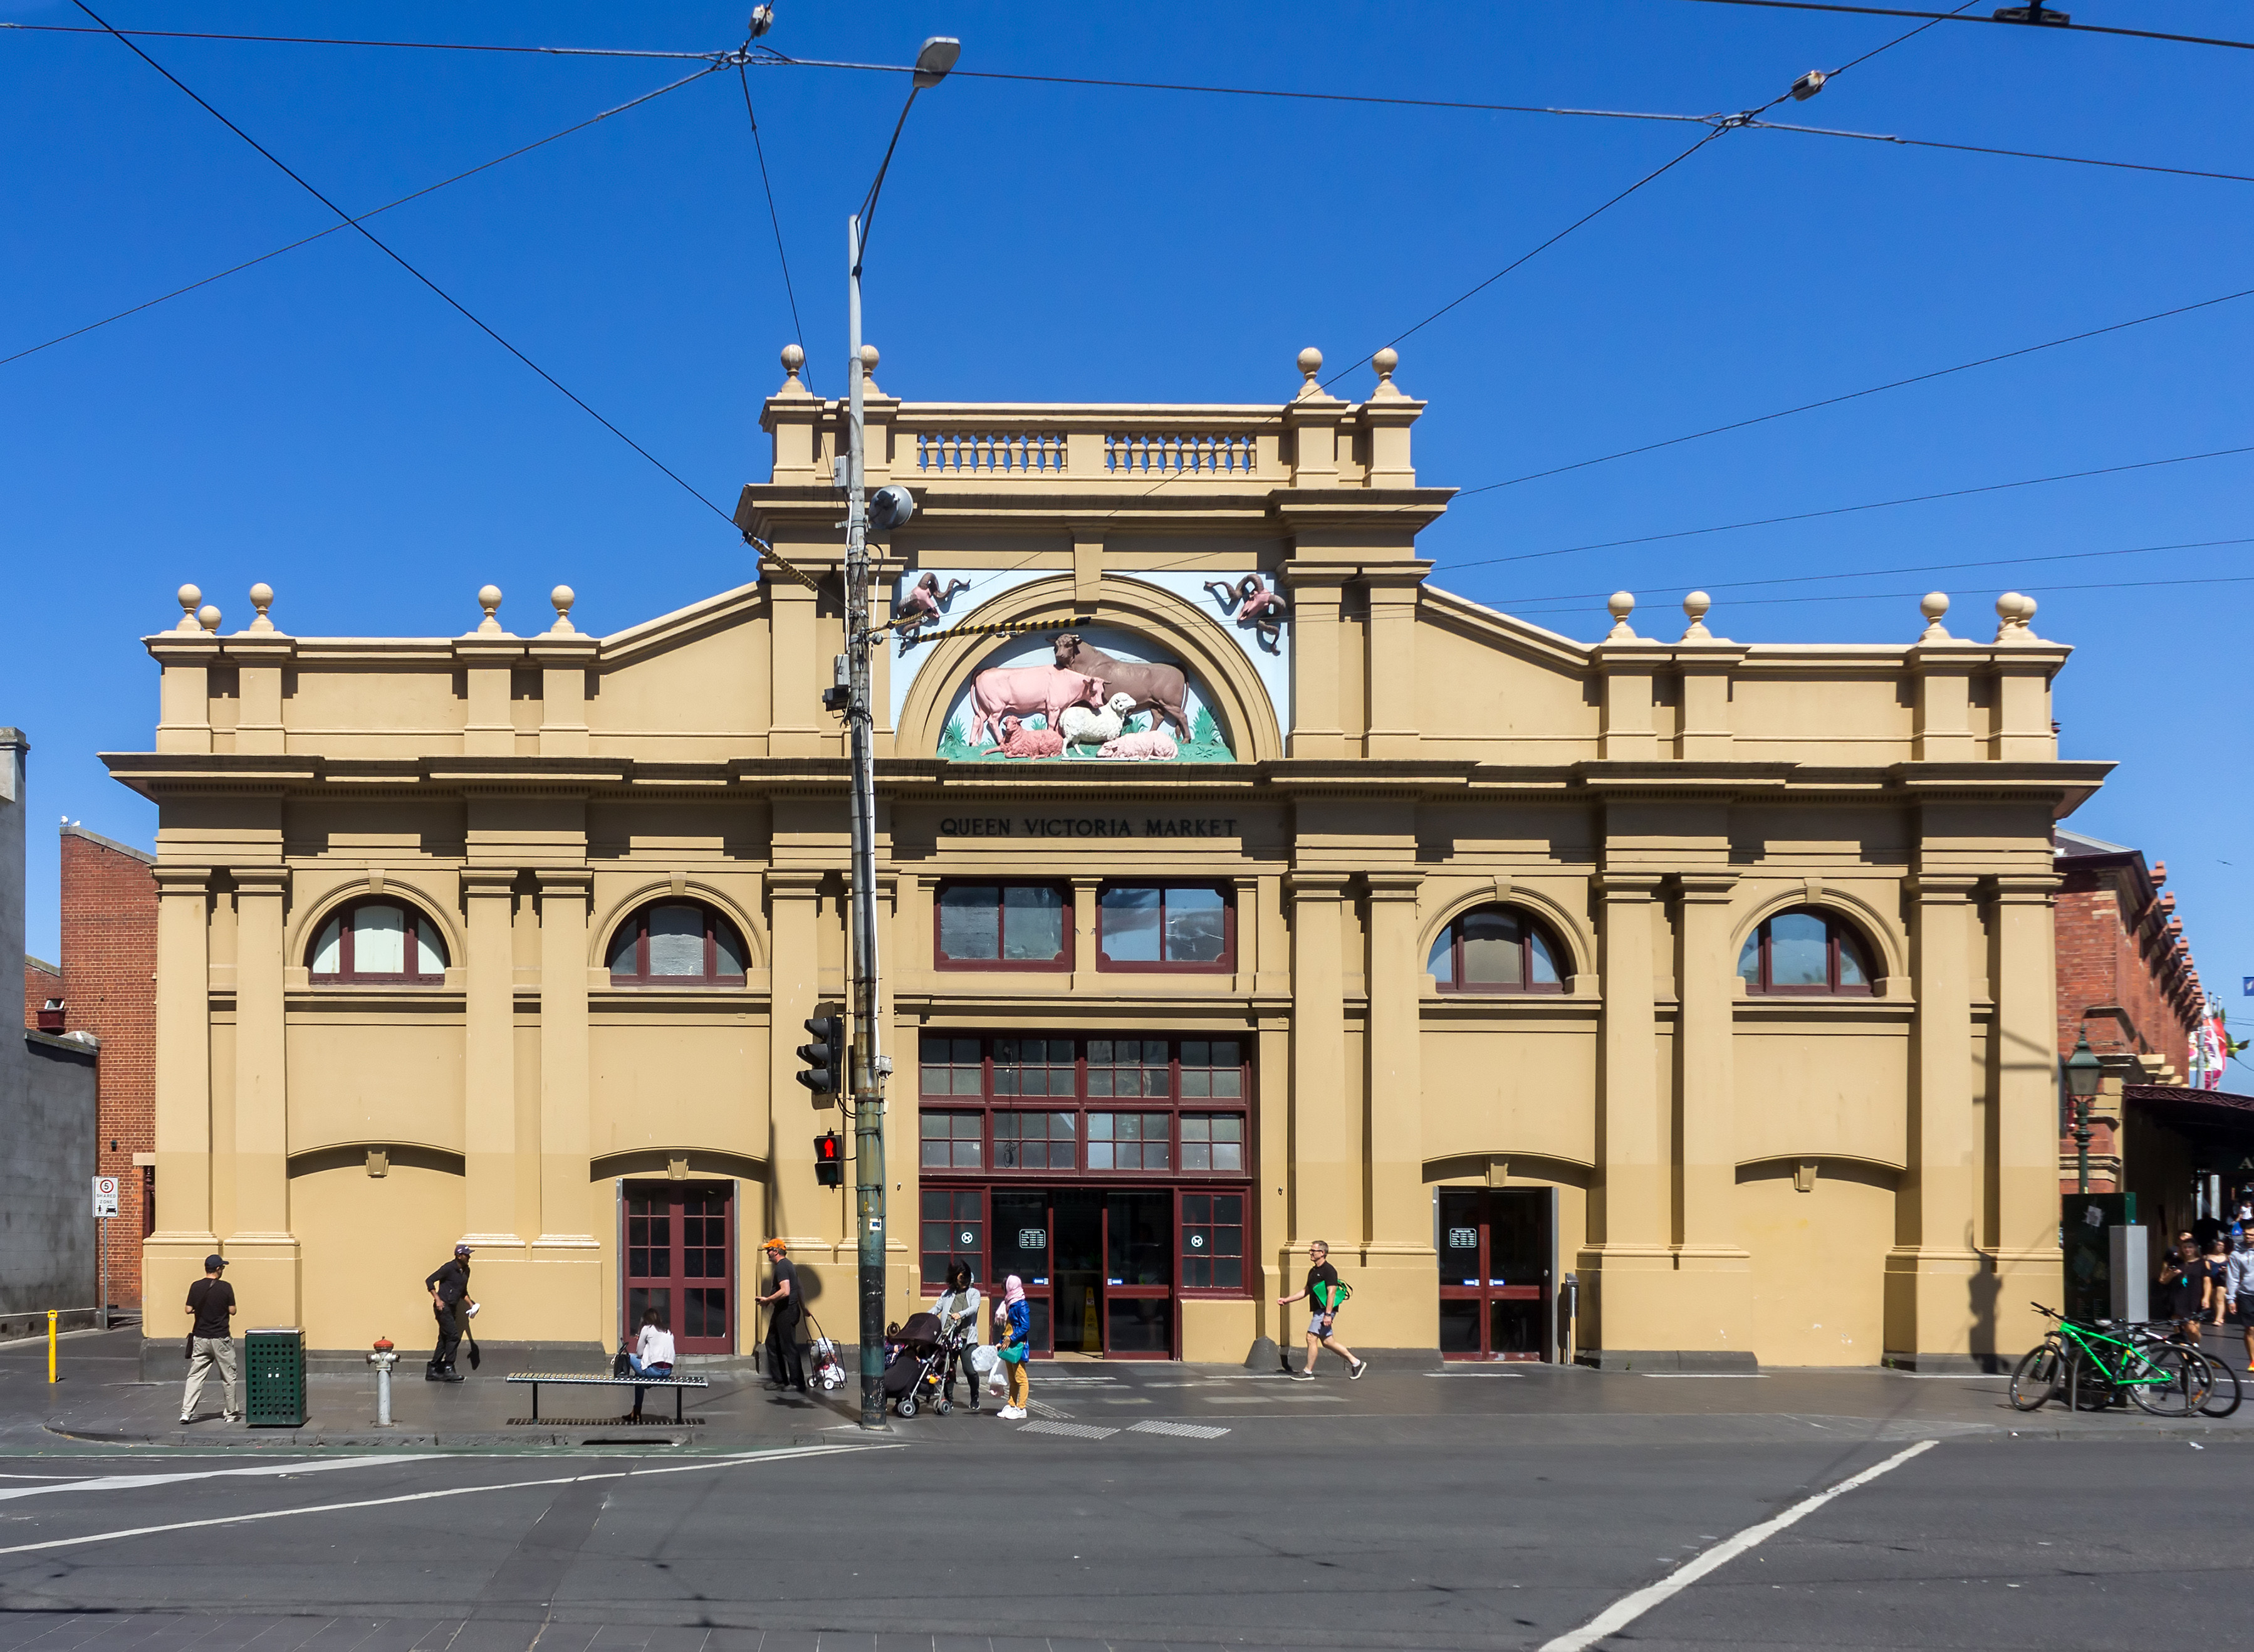 Tham quan chợ Nữ hoàng Victoria ngay giữa lòng thành phố Melbourne hiện đại - ảnh 3